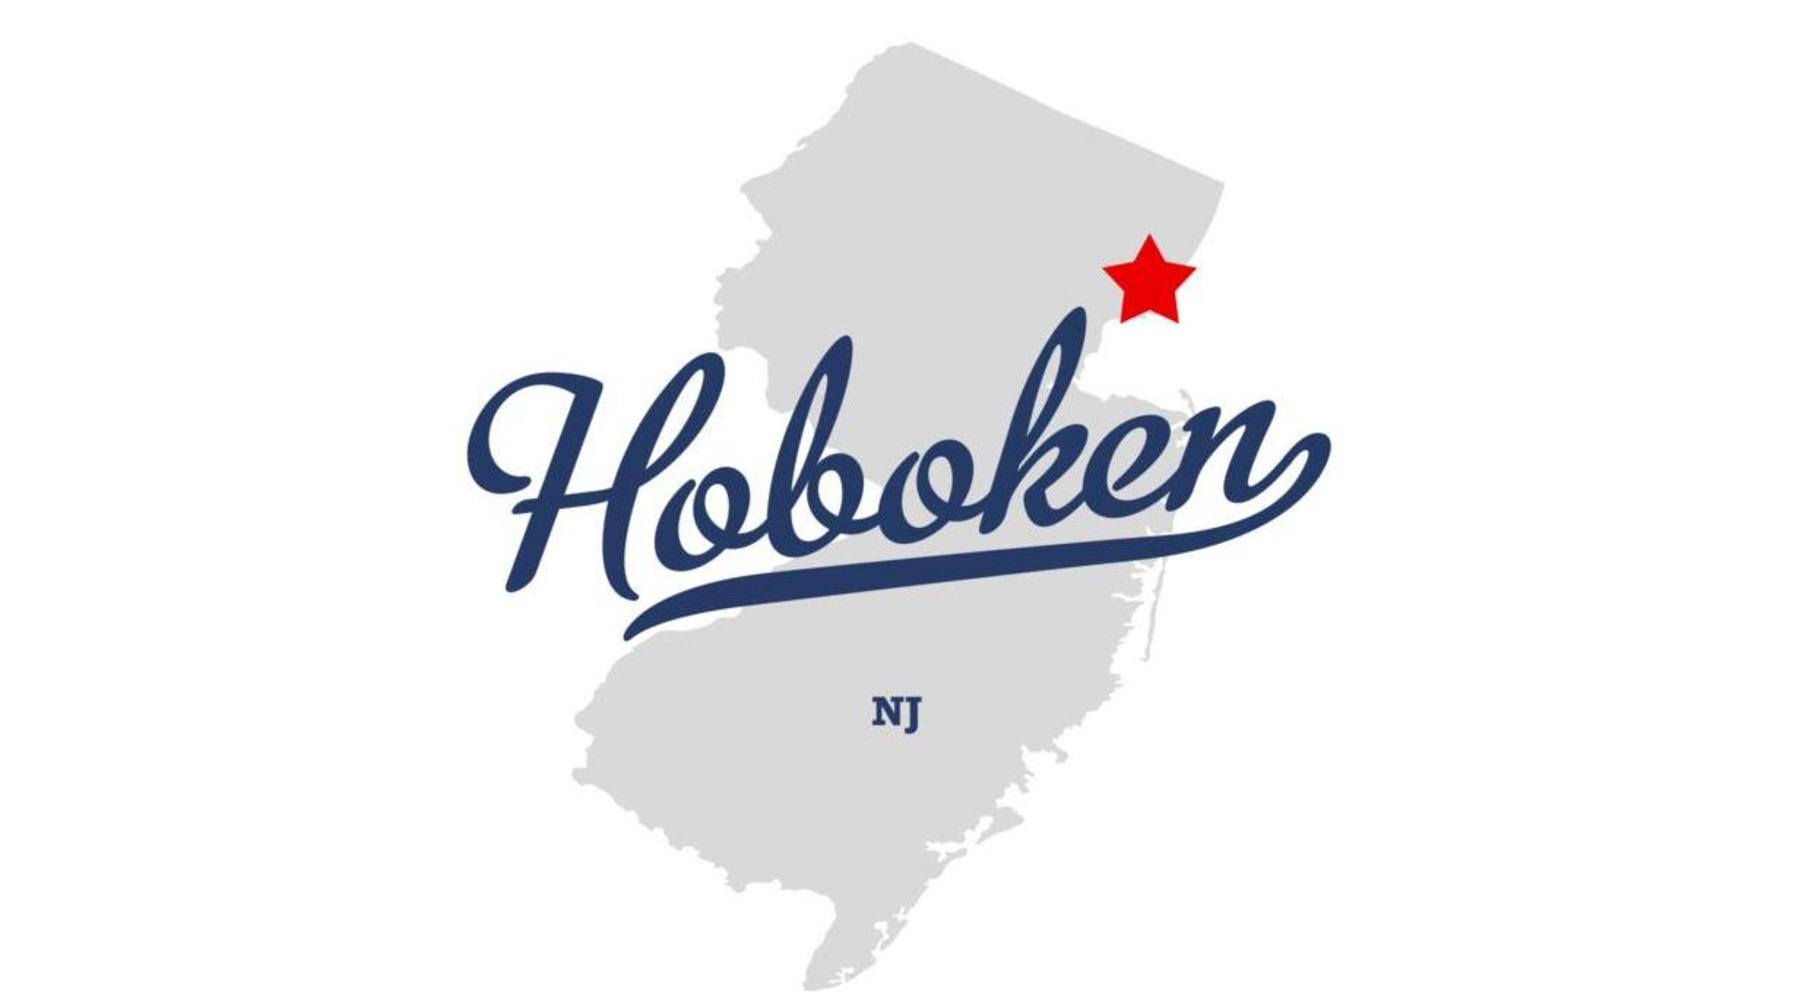 Hoboken, 07030